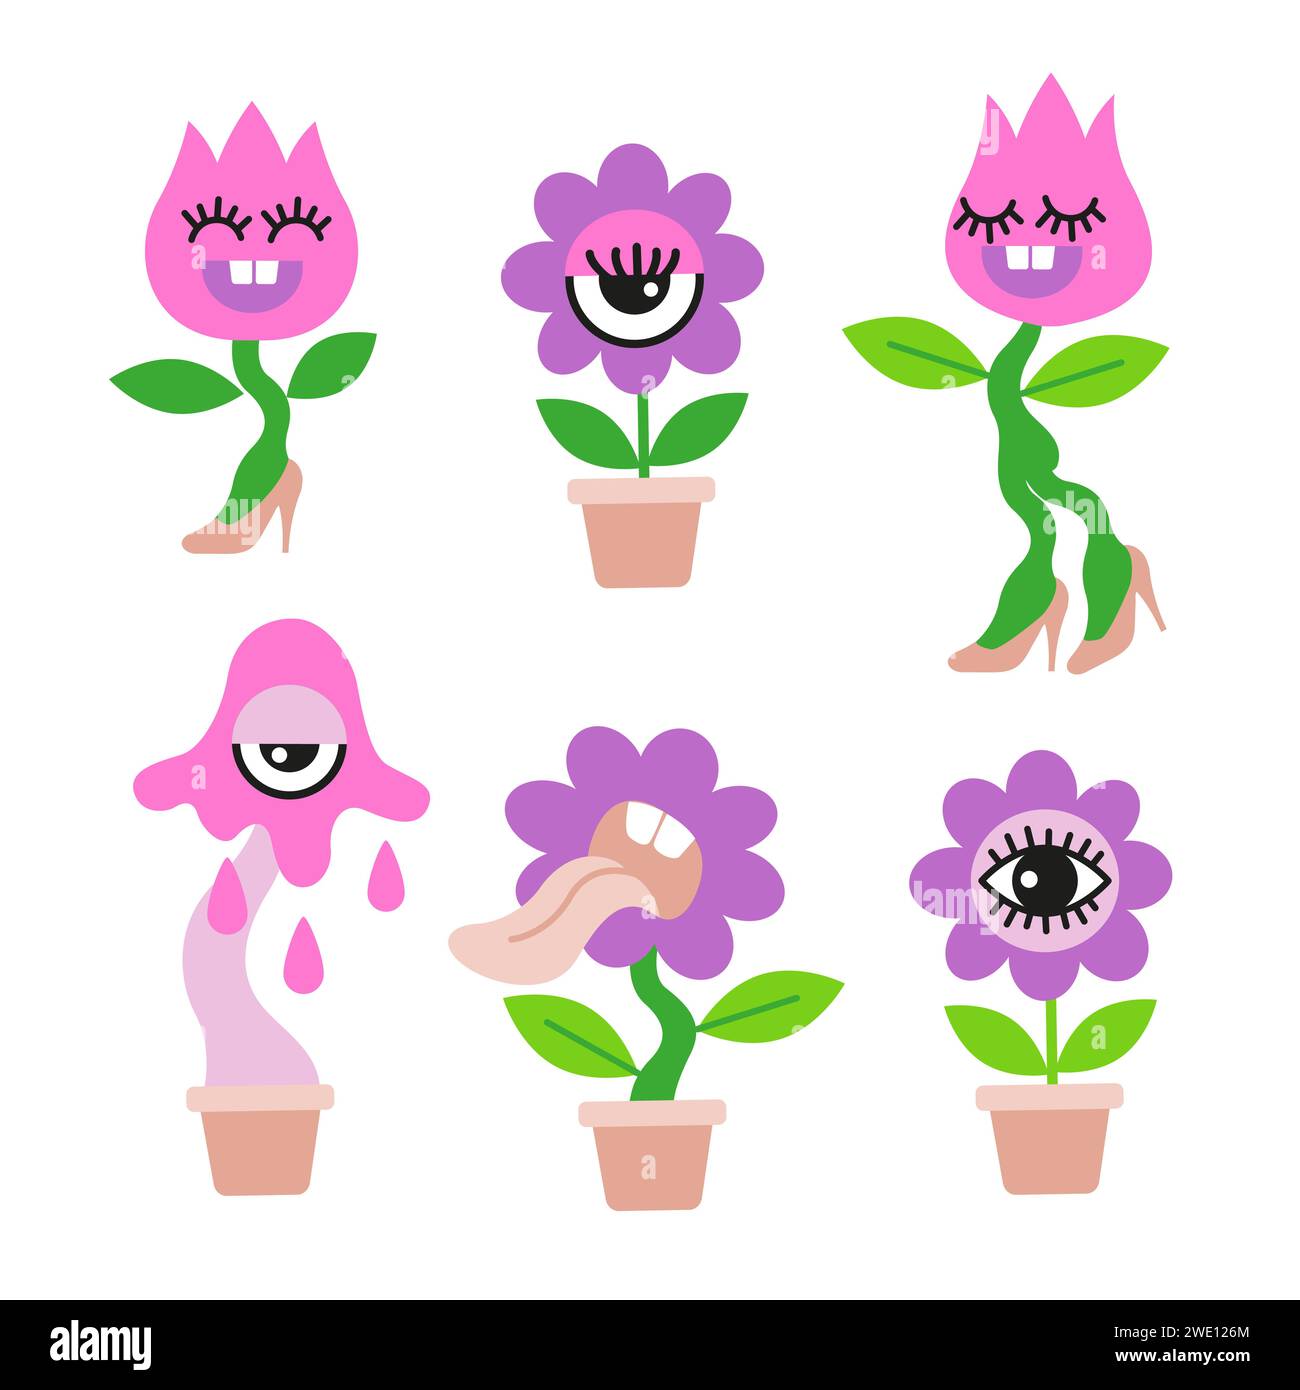 Illustrazione vettoriale disegnata a mano. Set di piante psichedeliche di casa arrabbiata in stile cartone animato piatto Illustrazione Vettoriale